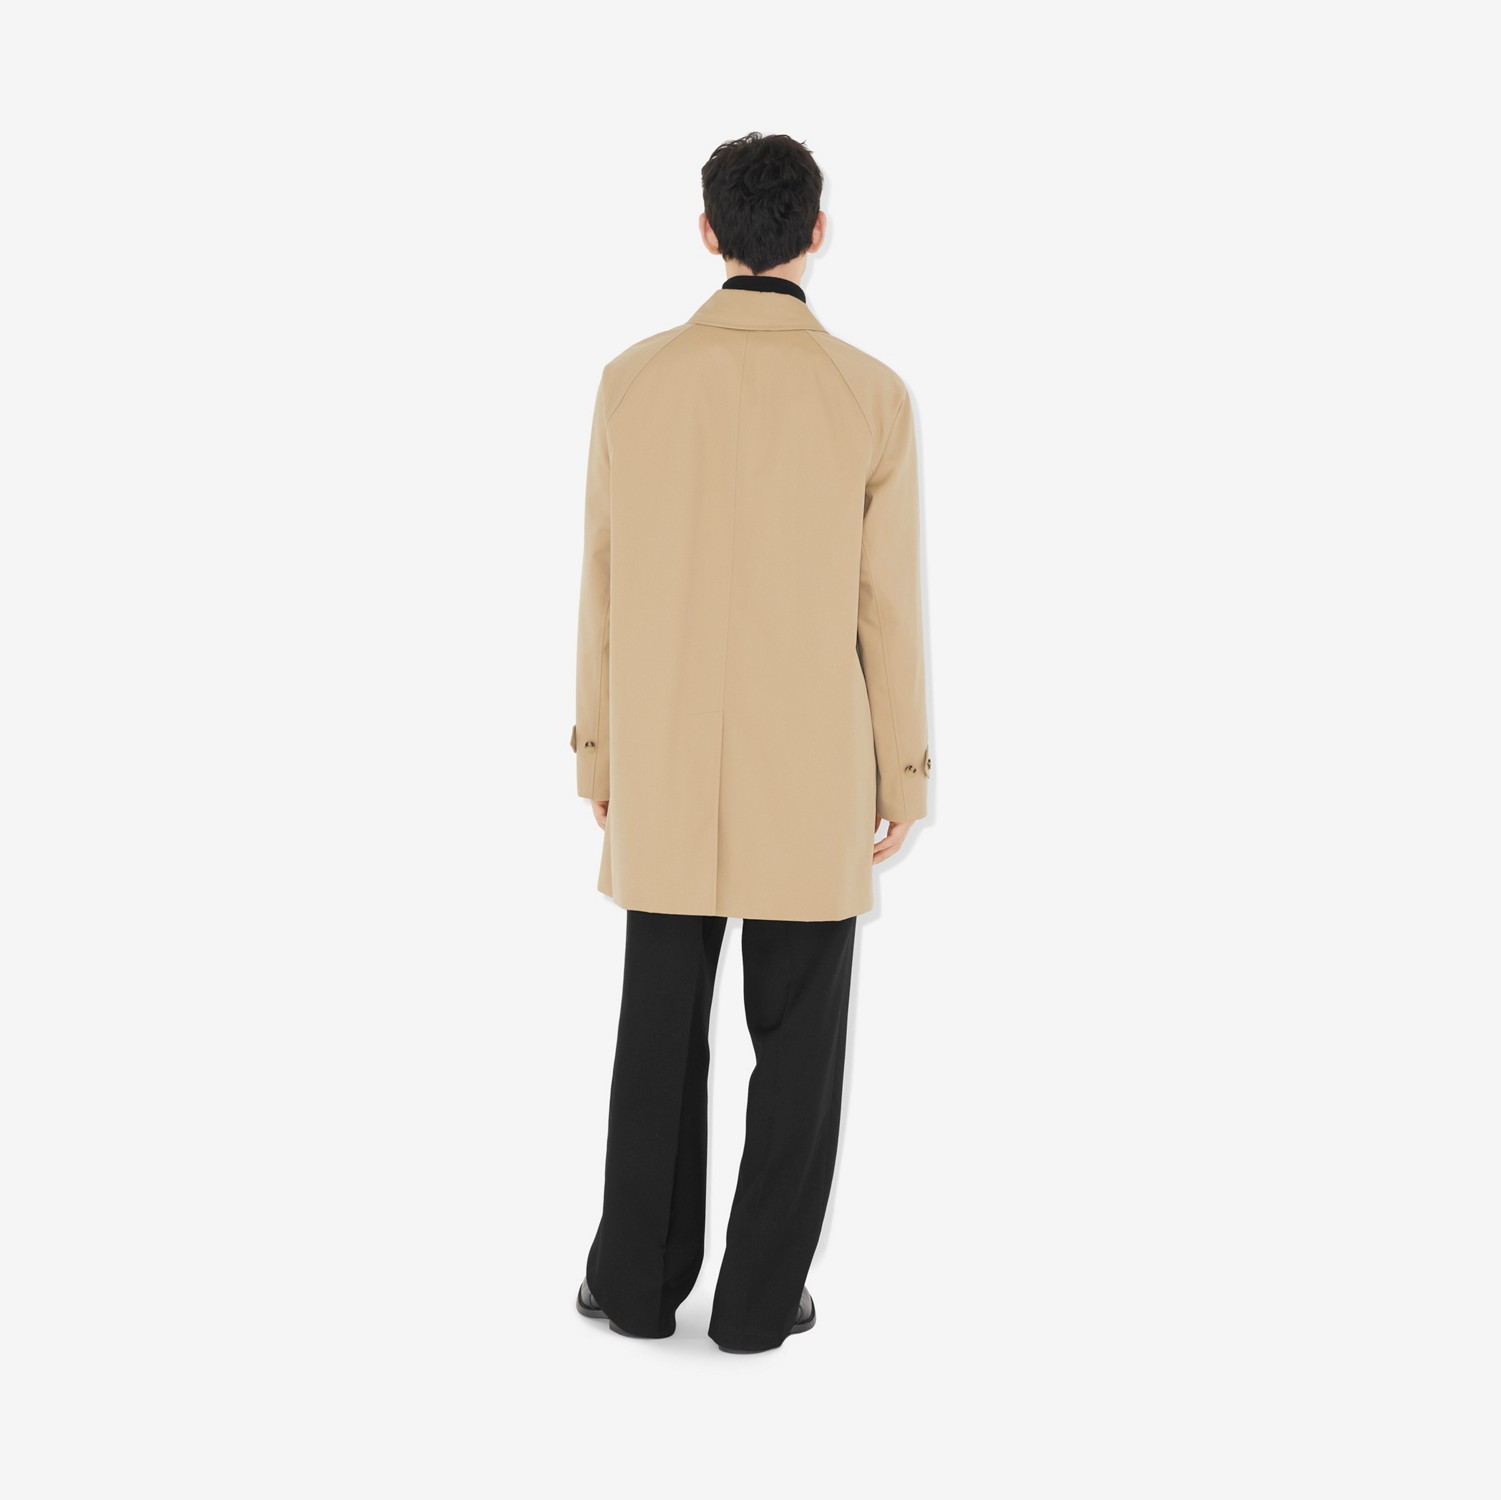 卡姆登版型 – 短款 Heritage 轻便大衣 (蜂蜜色) - 男士 | Burberry® 博柏利官网